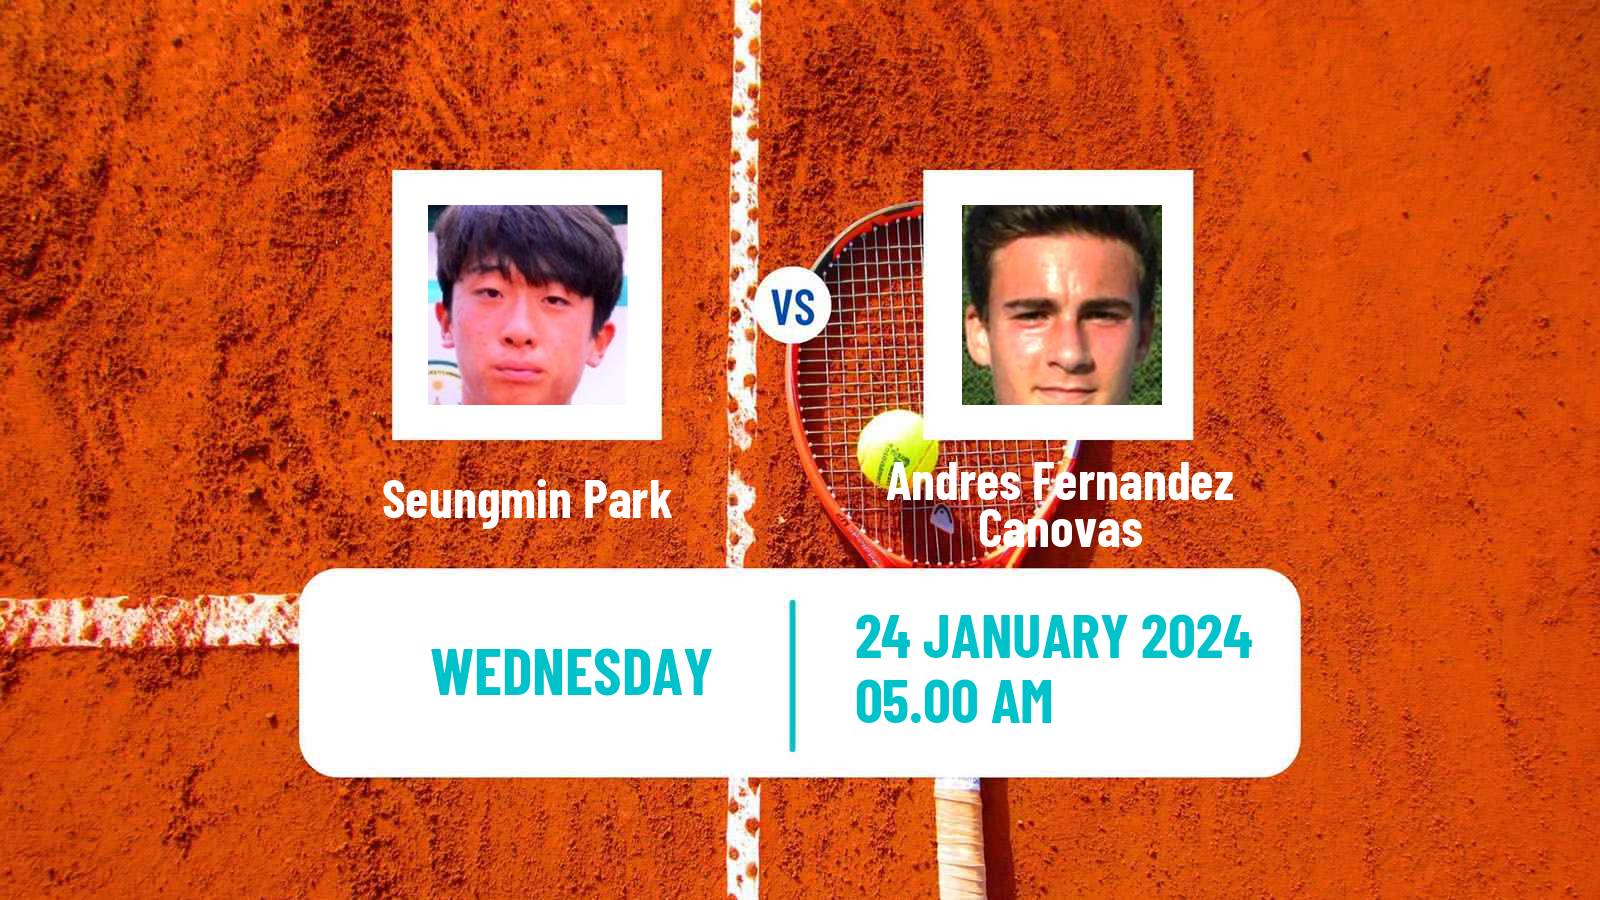 Tennis ITF M15 Monastir 4 Men Seungmin Park - Andres Fernandez Canovas